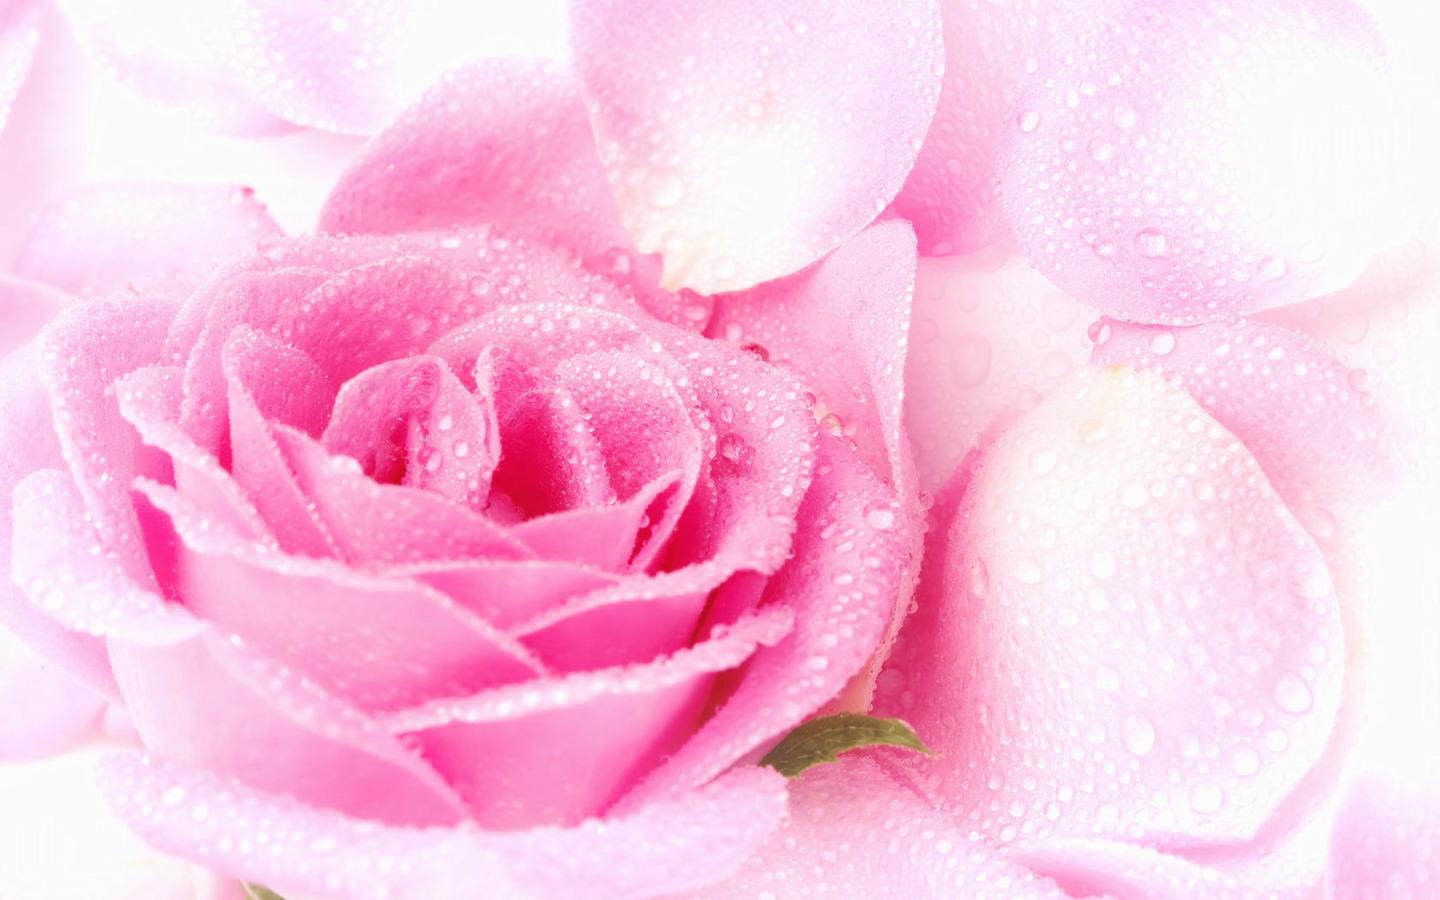 Pink Roses Wallpaper